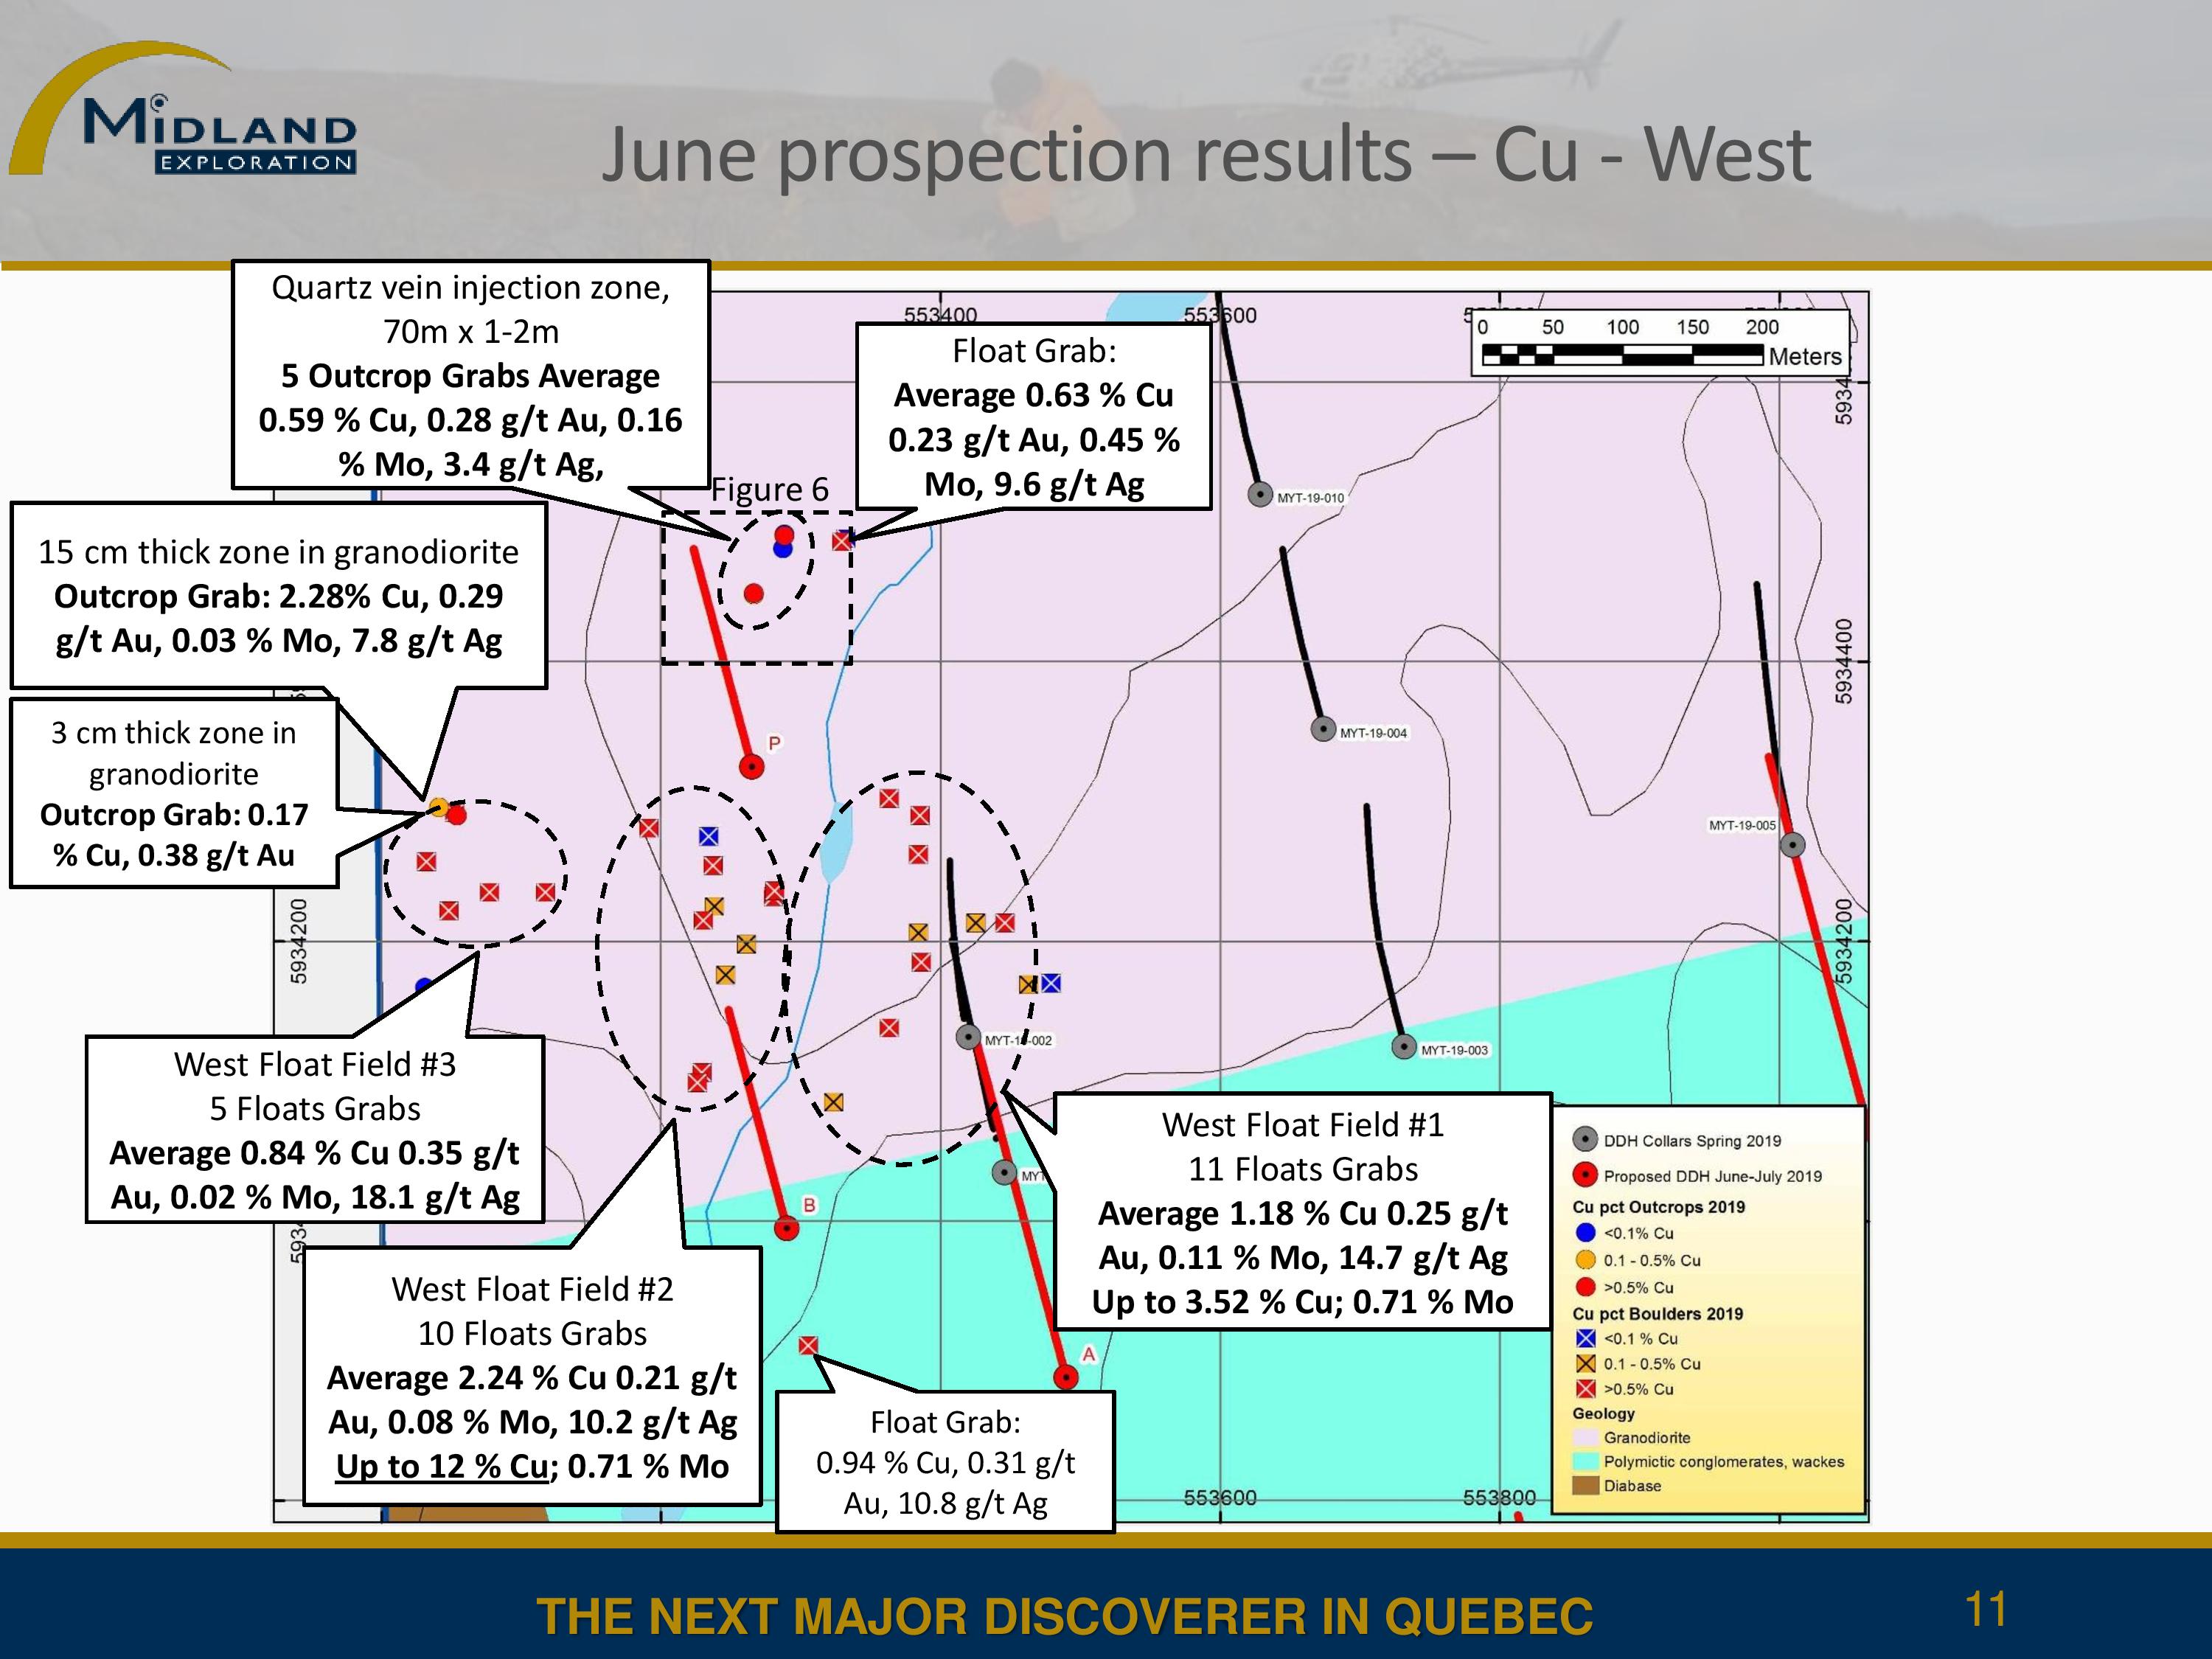 Résultats de prospection de juin - Ouest